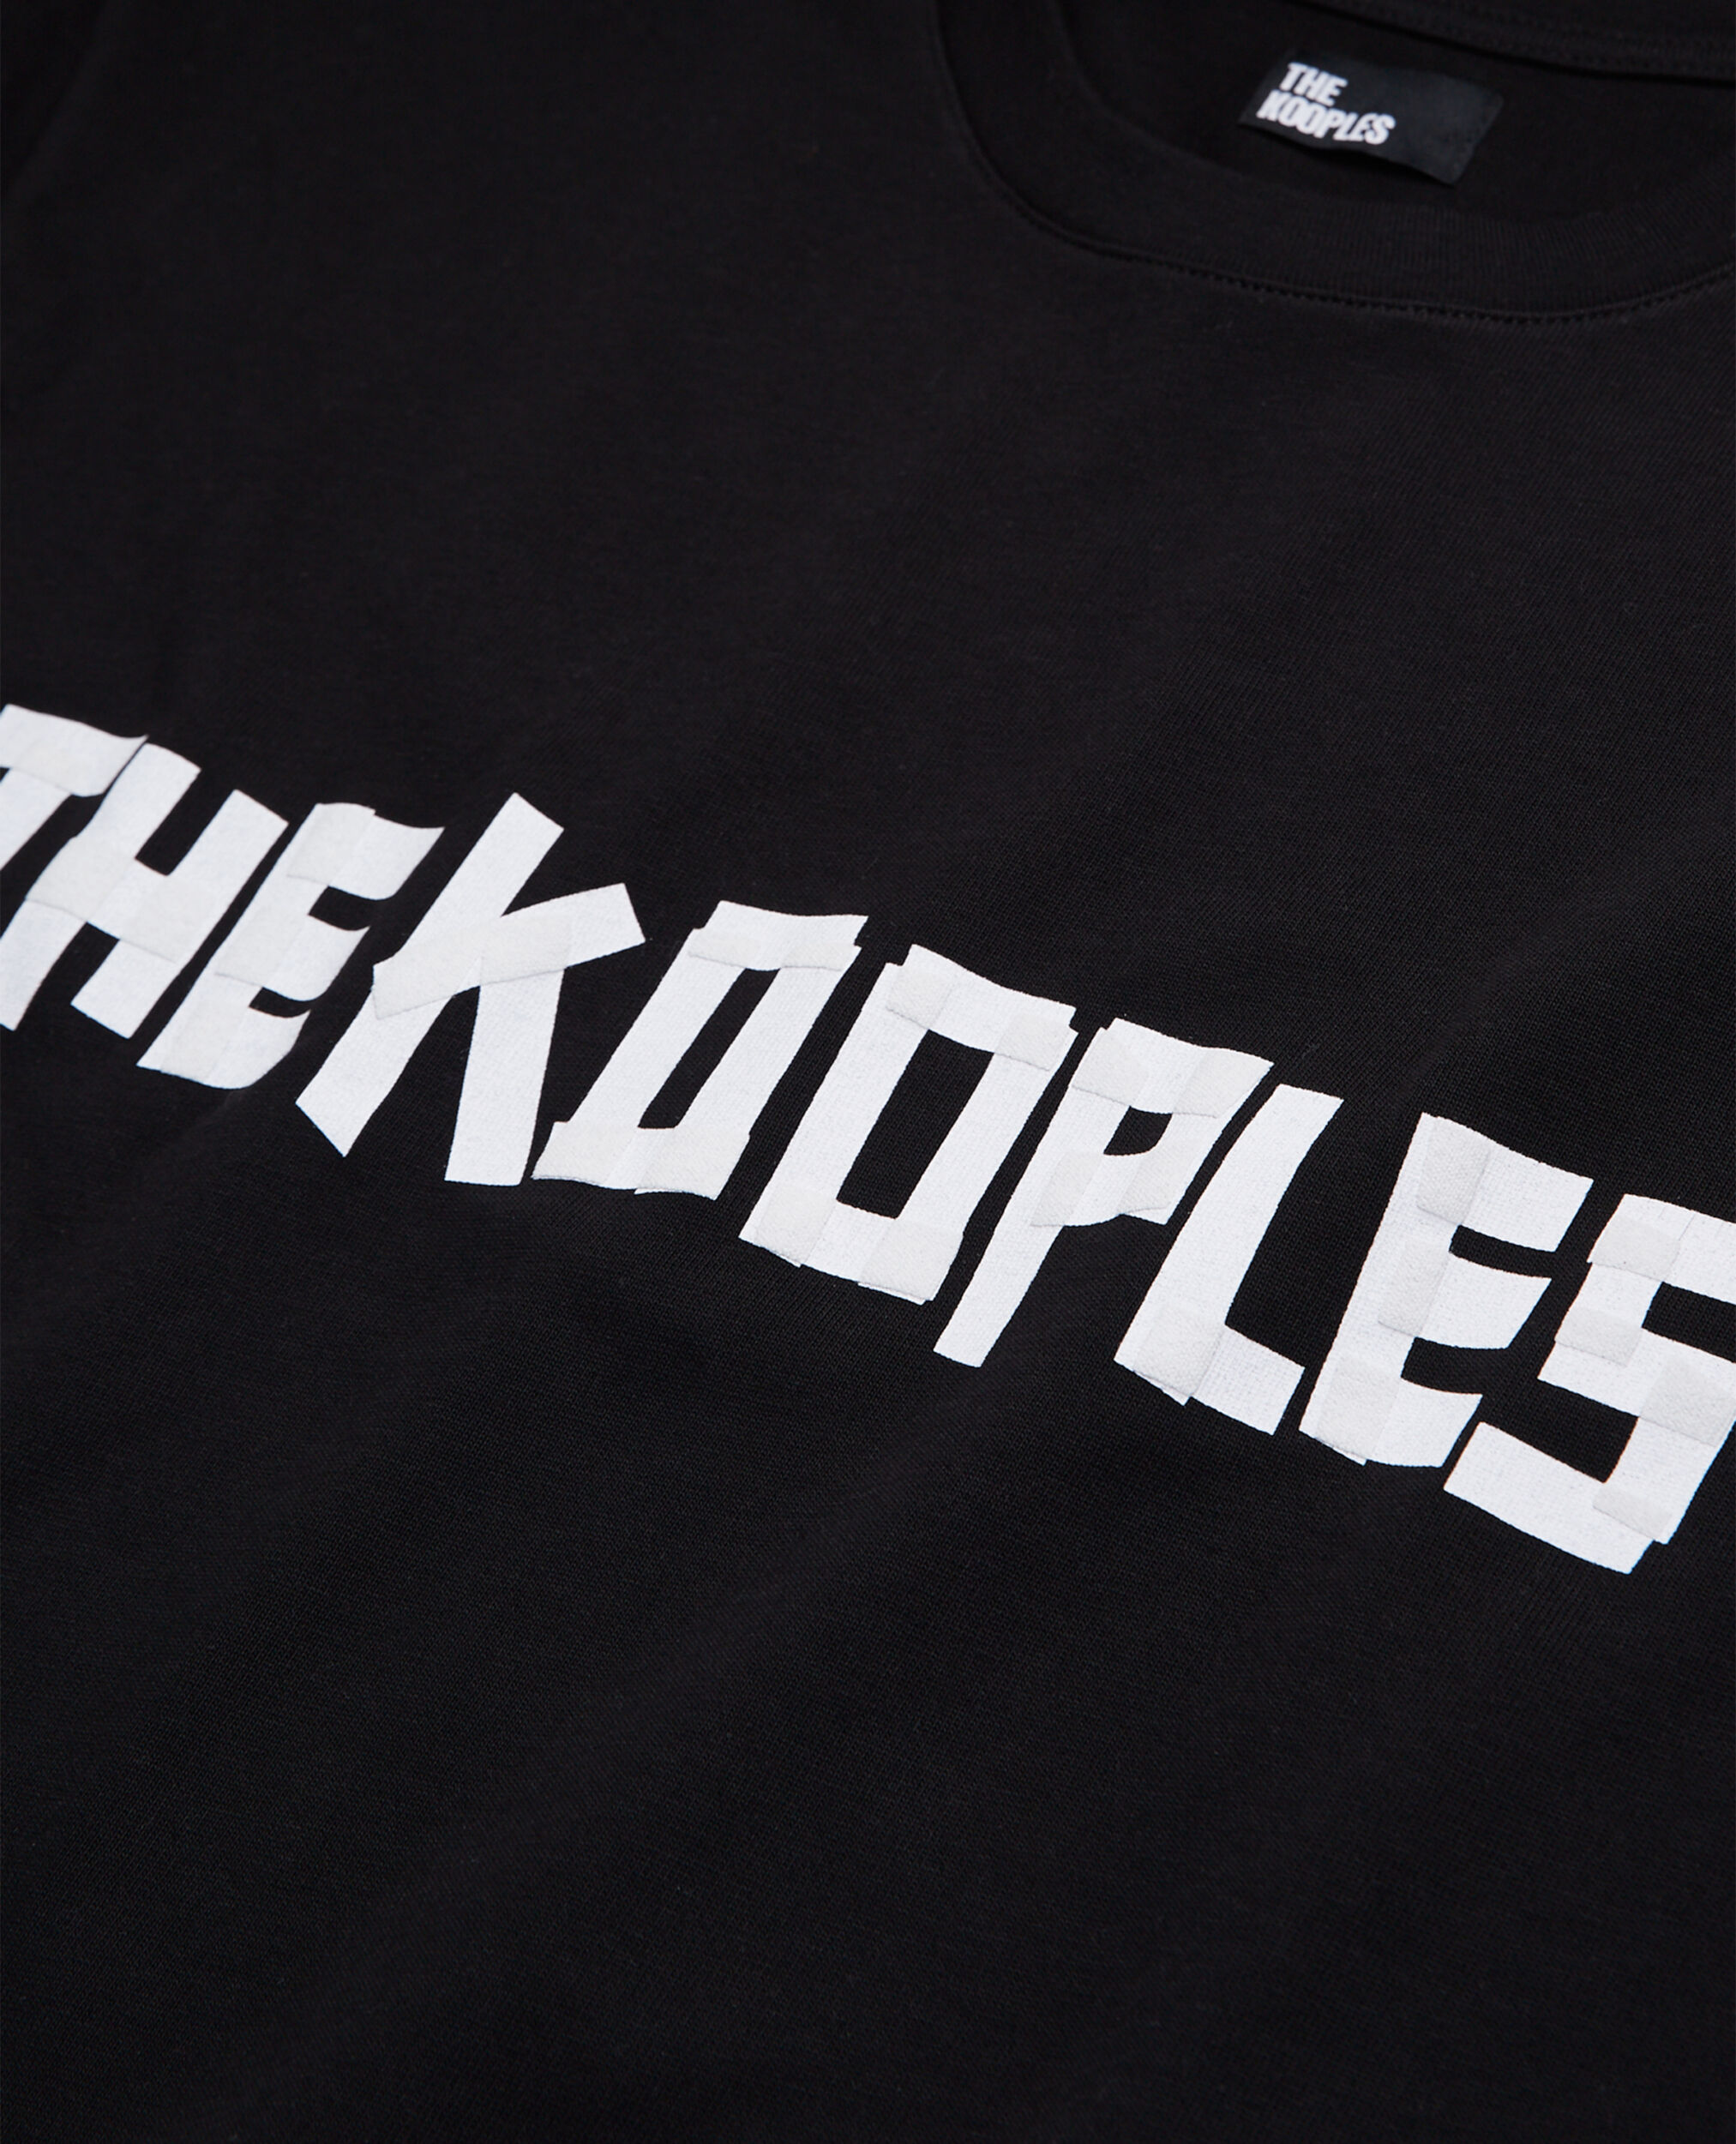 The Kooples black logo sweatshirt, BLACK, hi-res image number null